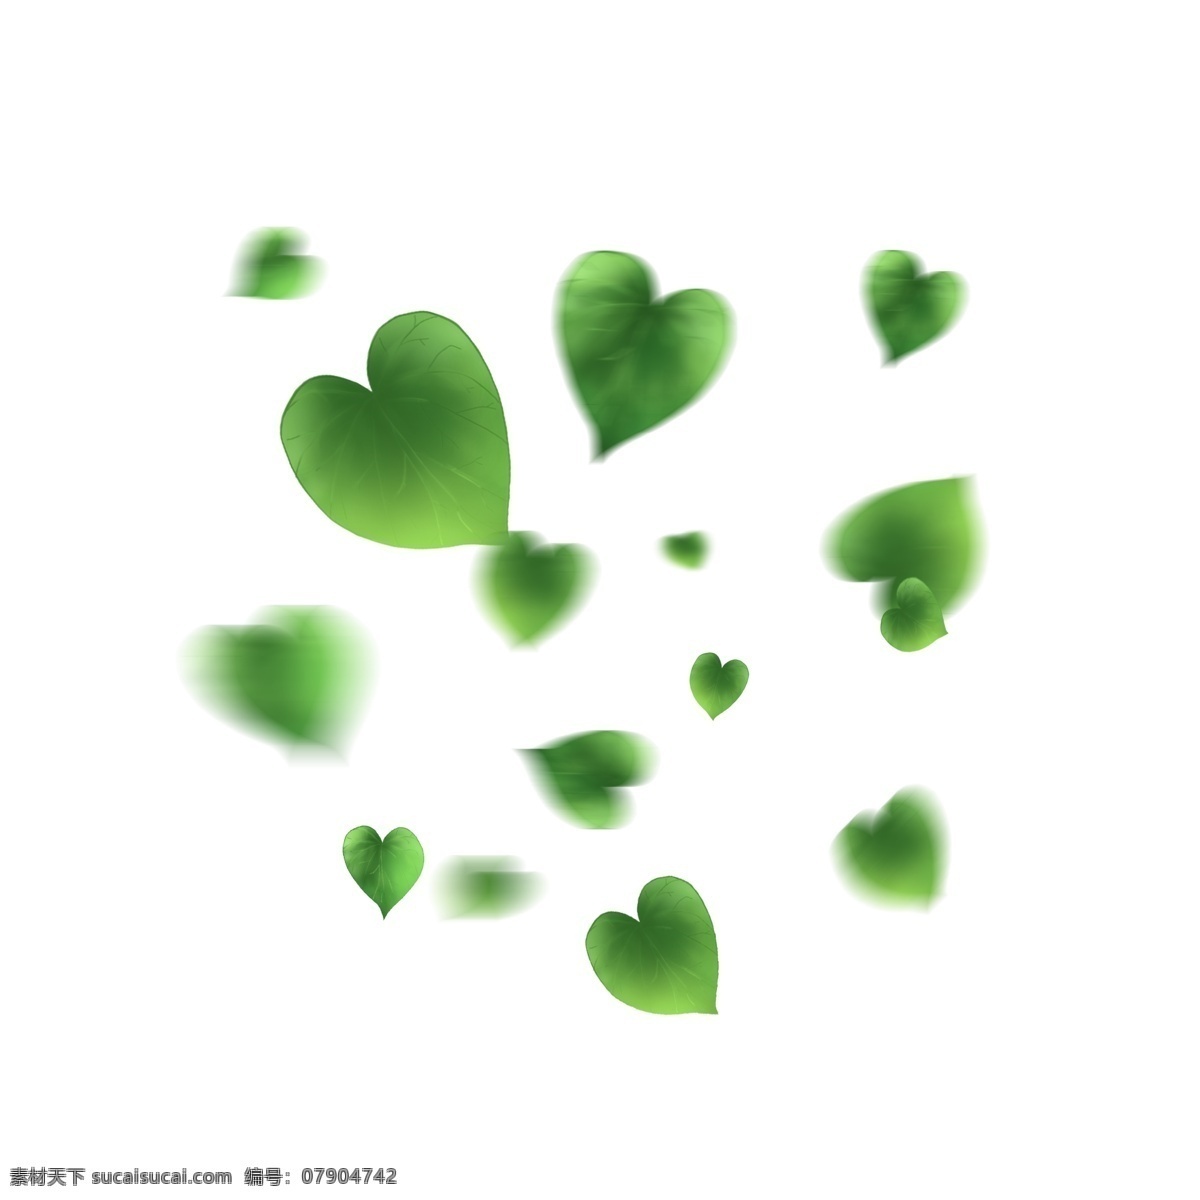 漂浮 树叶 绿色 爱 心形 爱心树叶 爱心 落叶 漂浮的树叶 爱心落叶